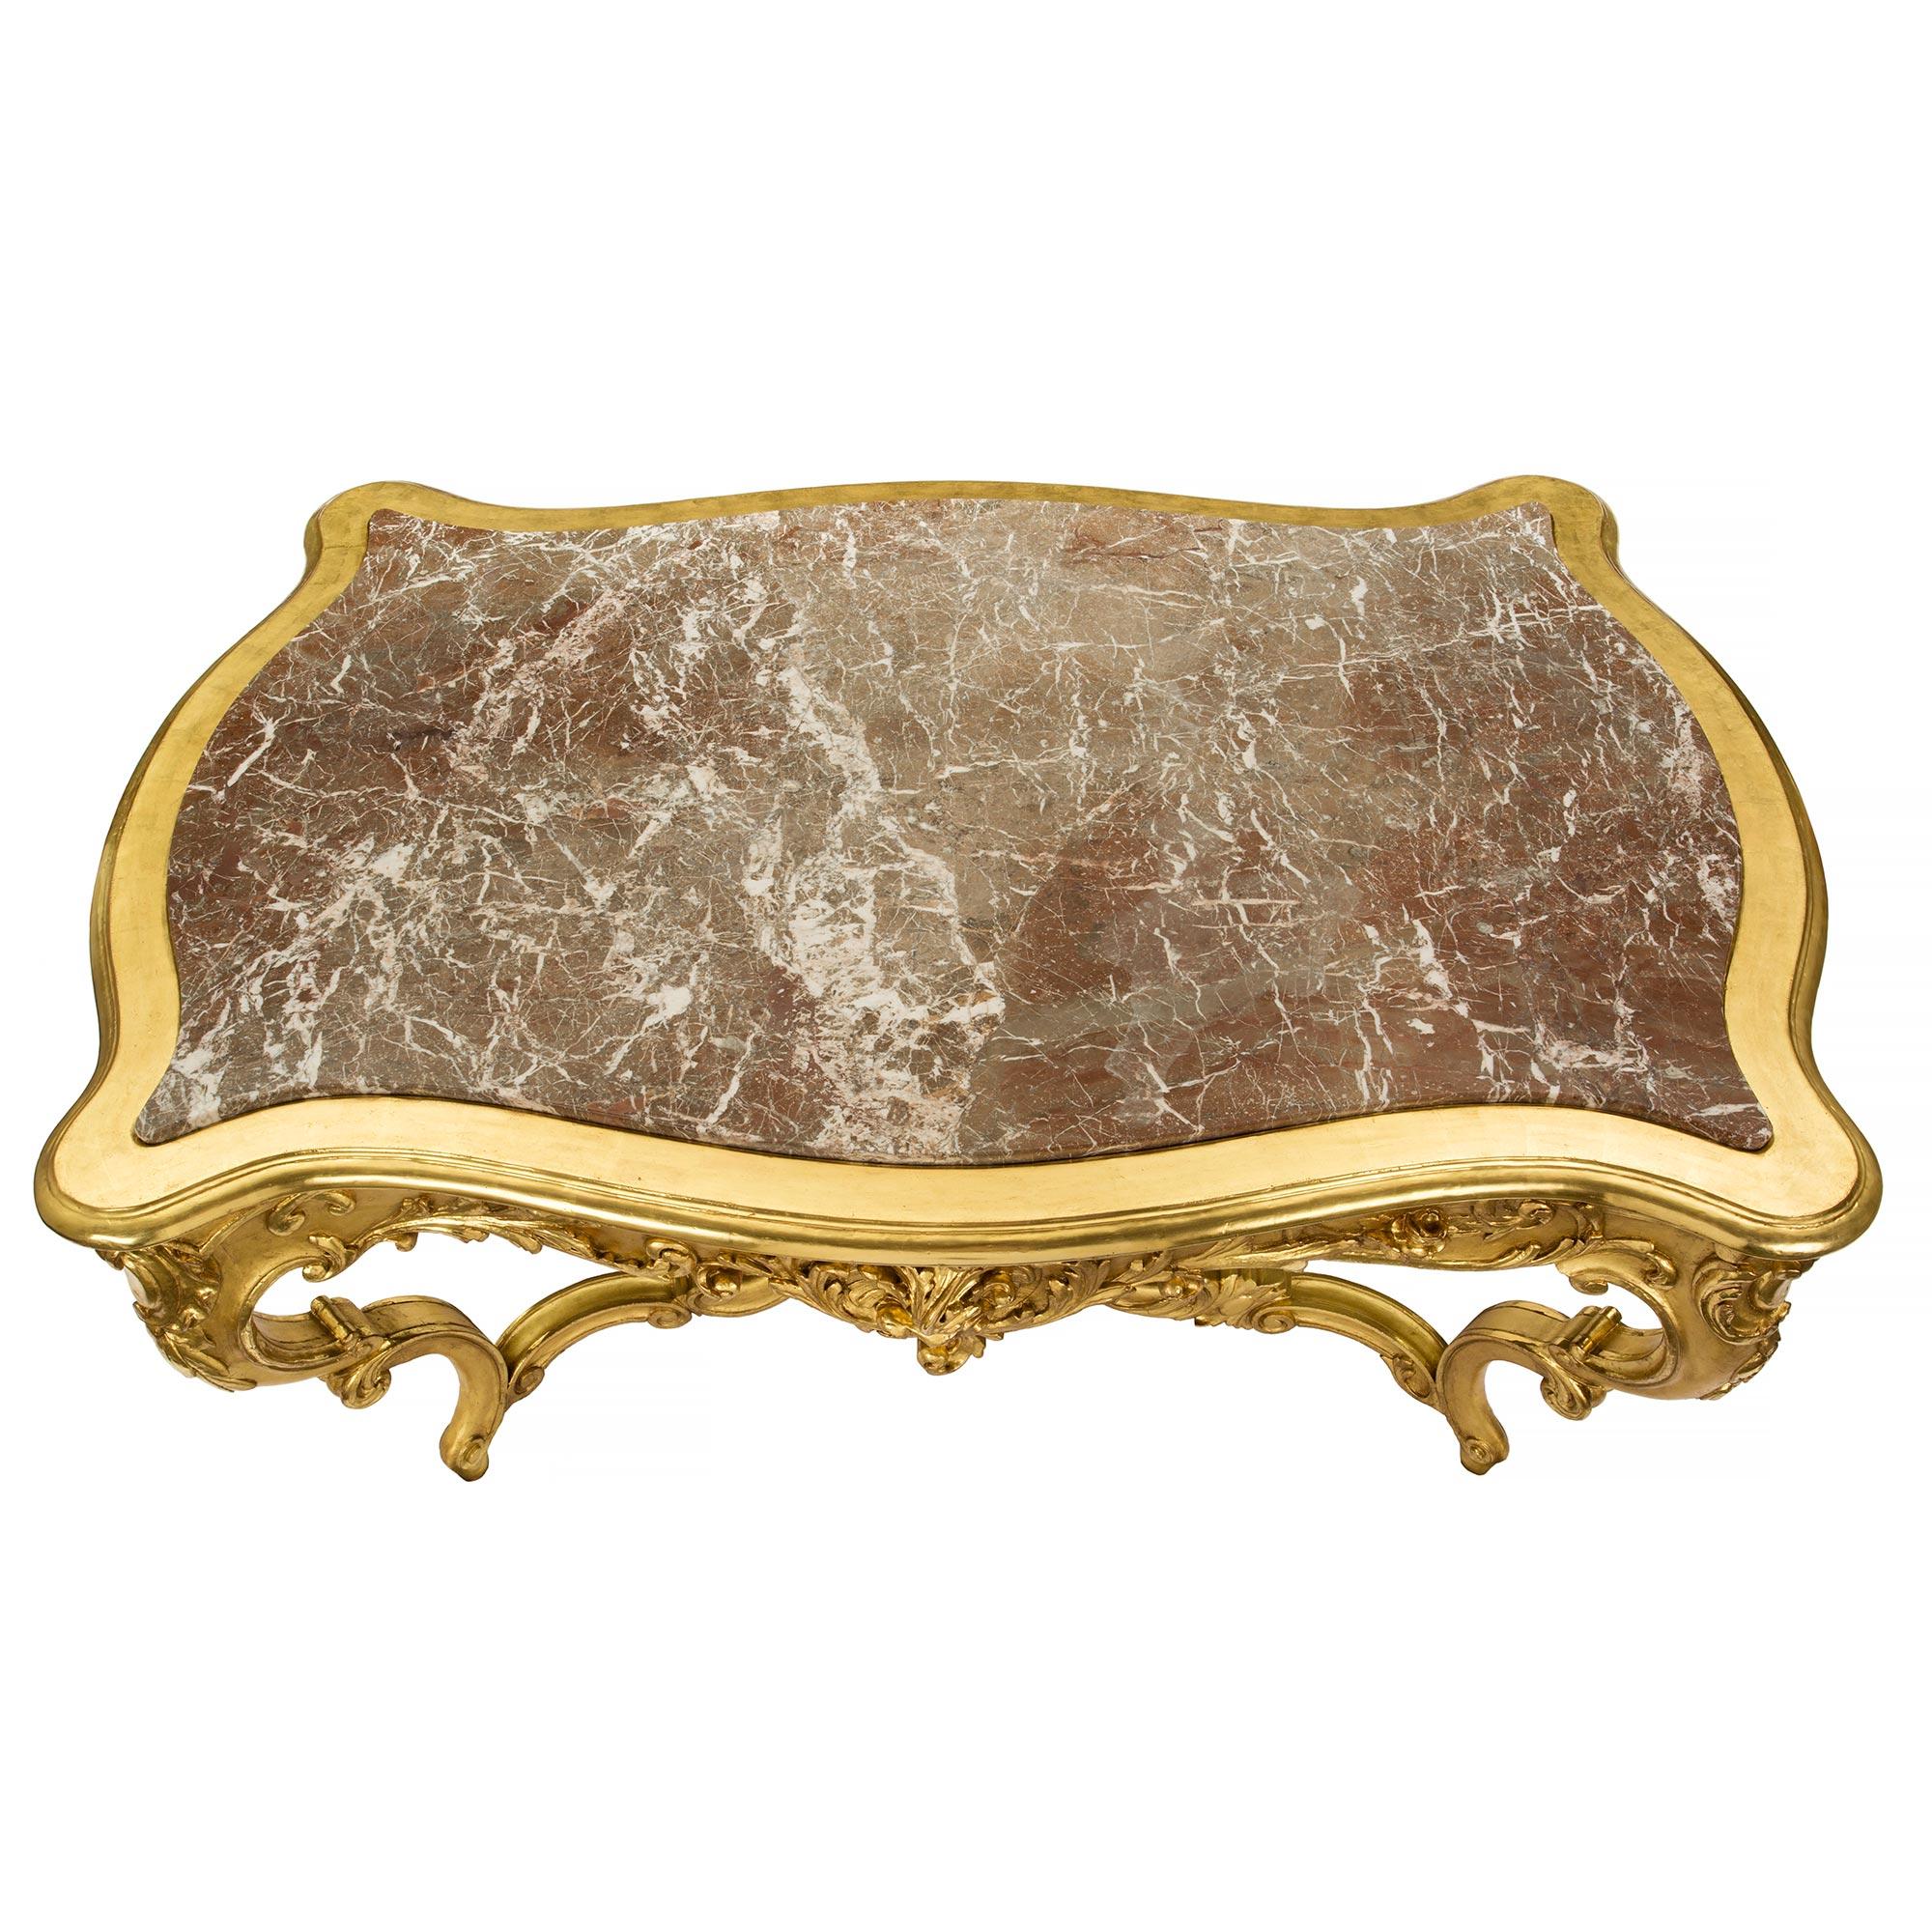 Sensationnelle table centrale en bois doré et marbre de style Louis XV italien du 19ème siècle avec un tiroir. La table est surélevée par d'exceptionnels pieds en volutes avec des mouvements de feuillage et un impressionnant châssis central sculpté